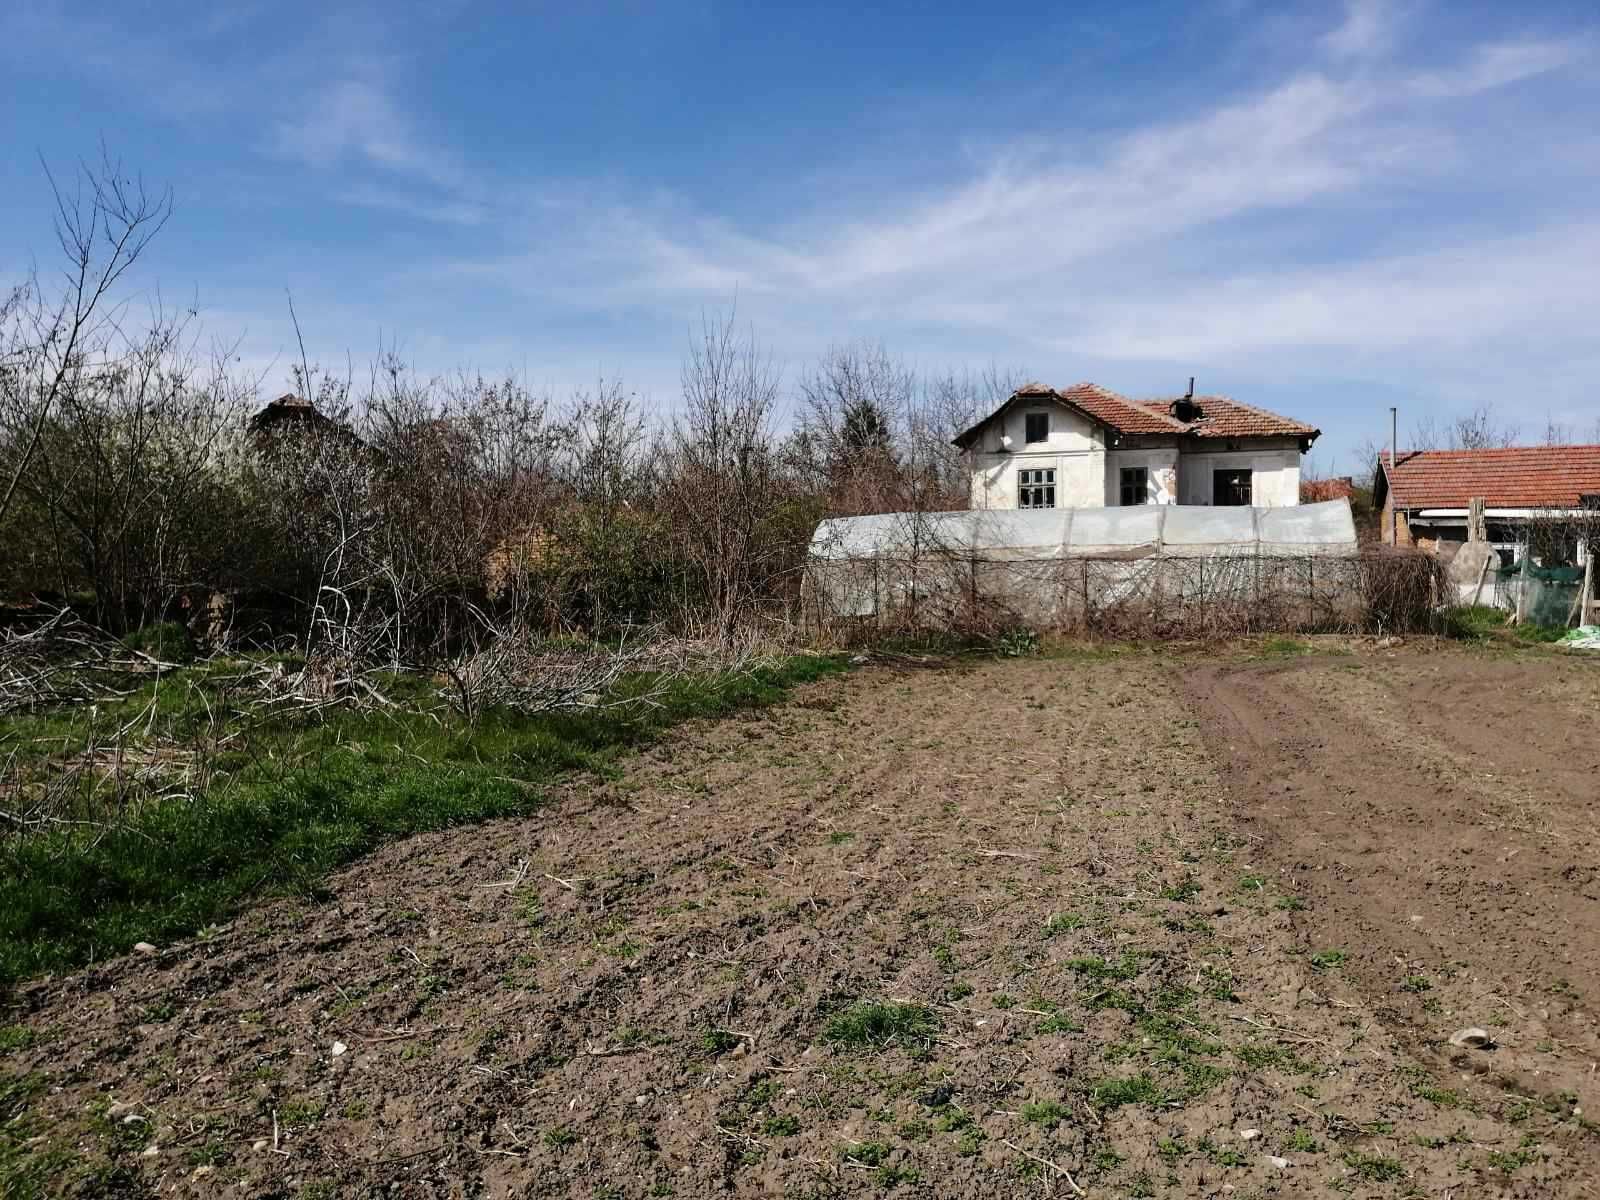 Голям двор с къща за цялостен ремонт, с. Горни Дъбник 139 км от София